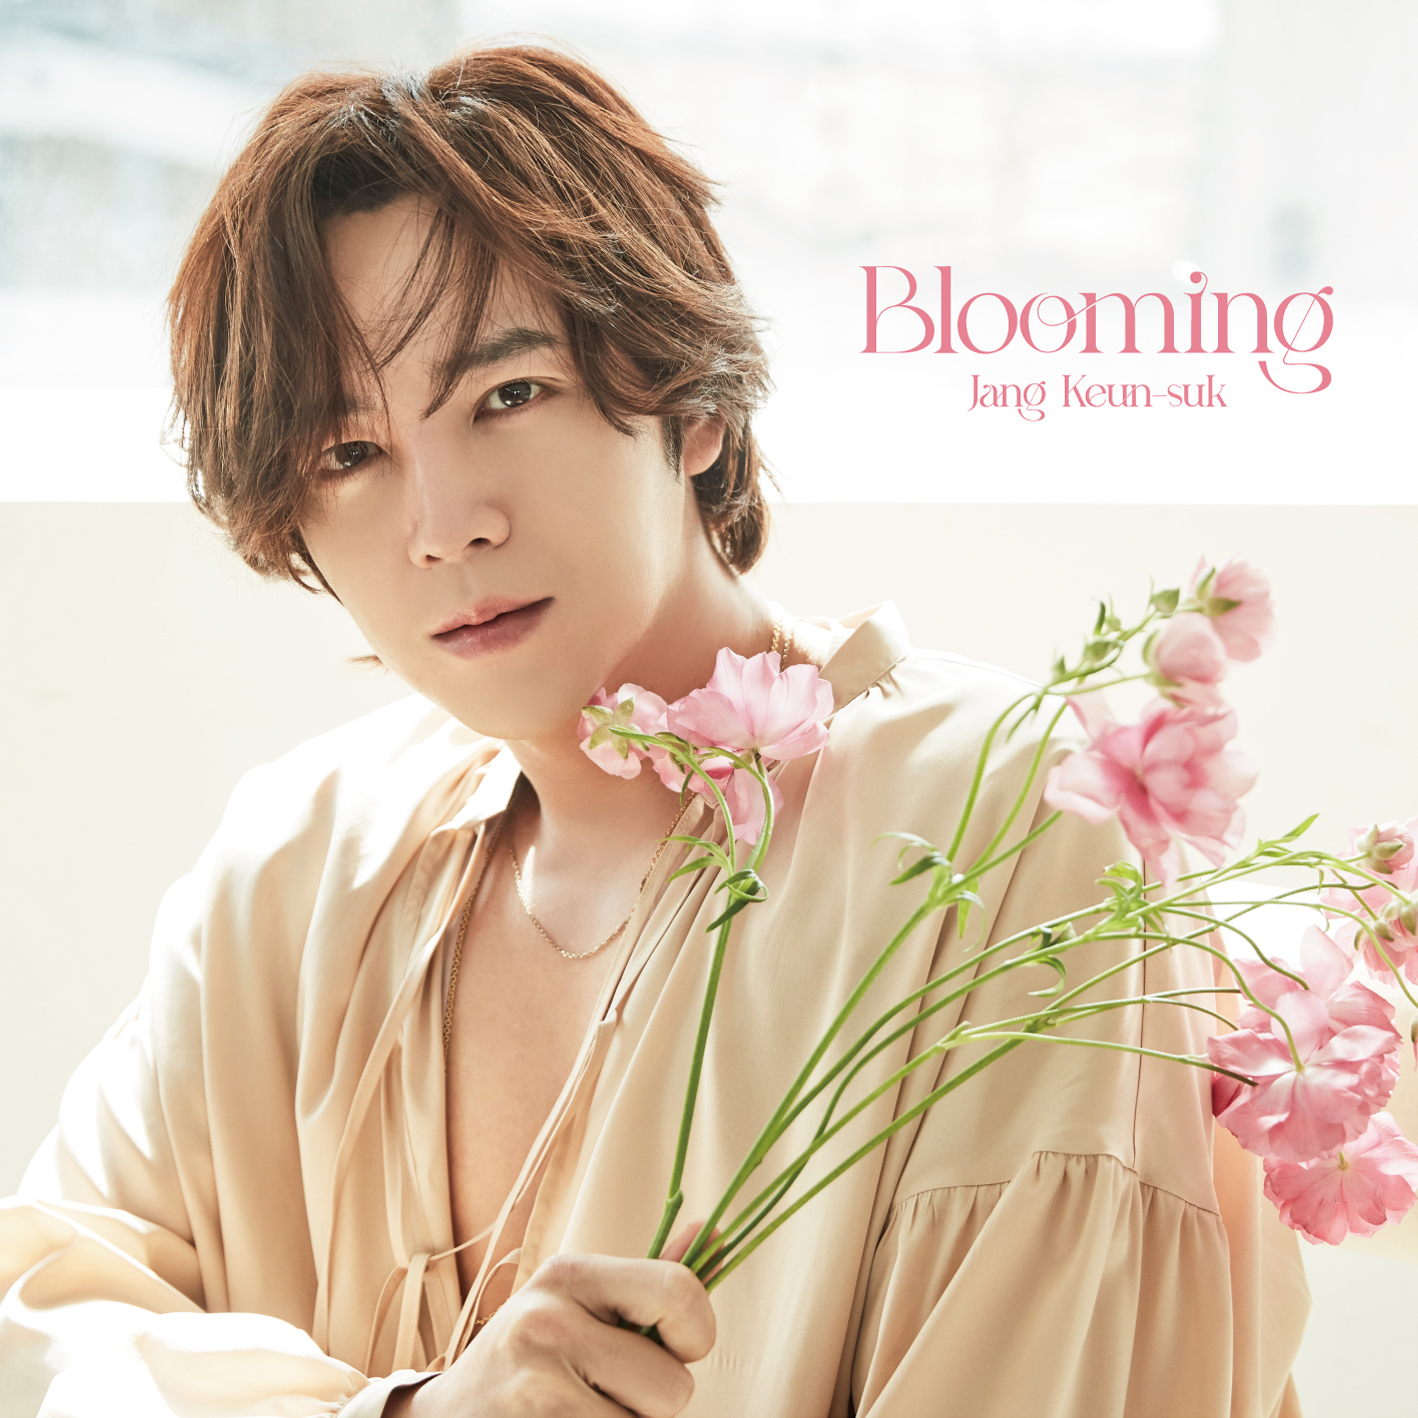 チャン・グンソク - Blooming [初回限定A] | 韓国エンタメグッズ